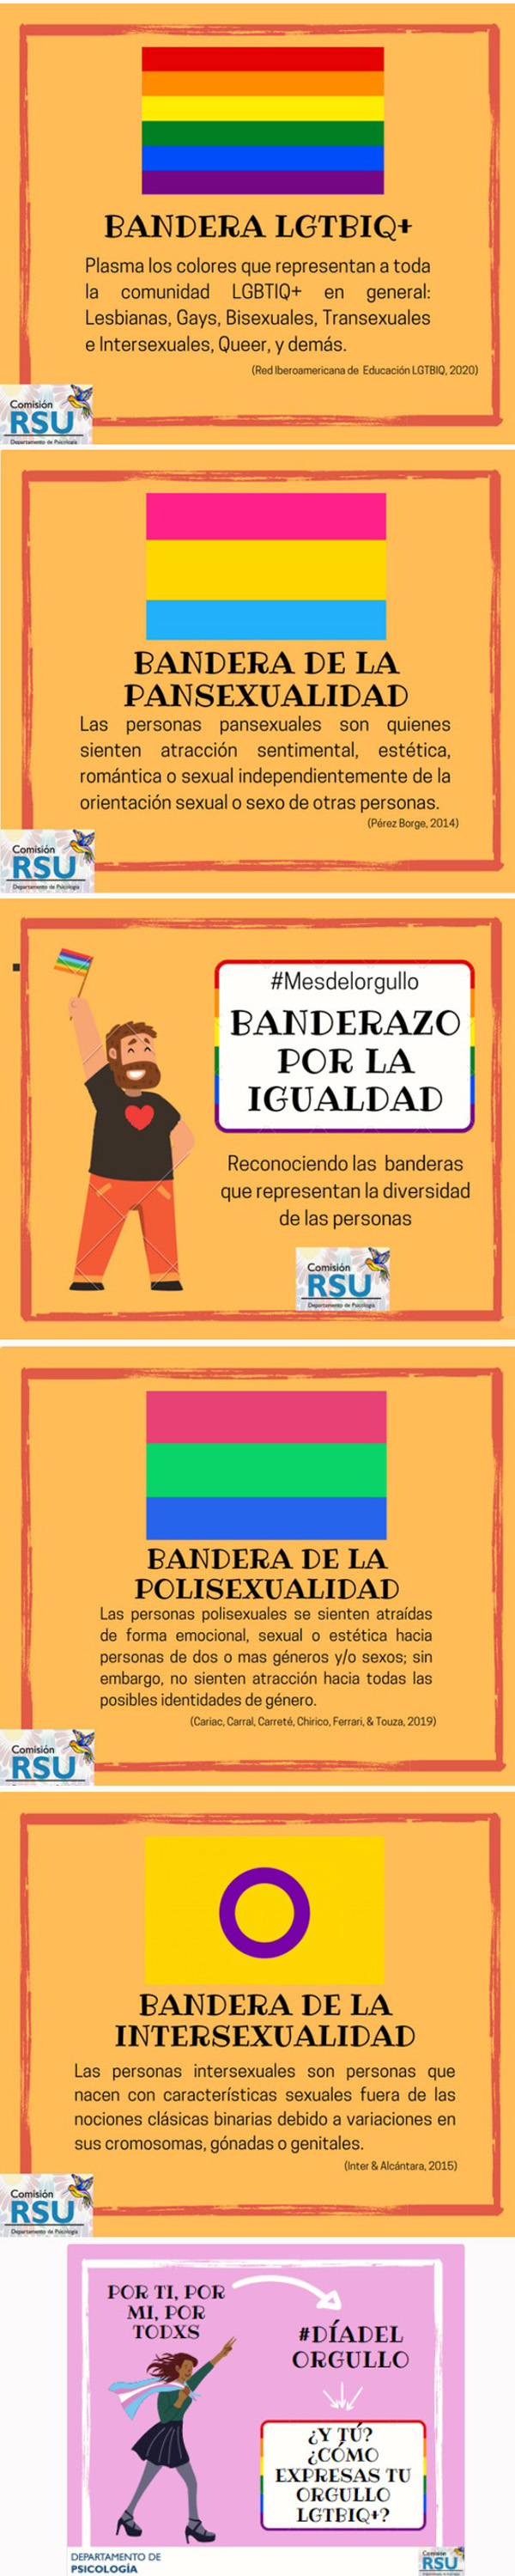 Universidad Pontificia del Perú - Orgullo gay 3